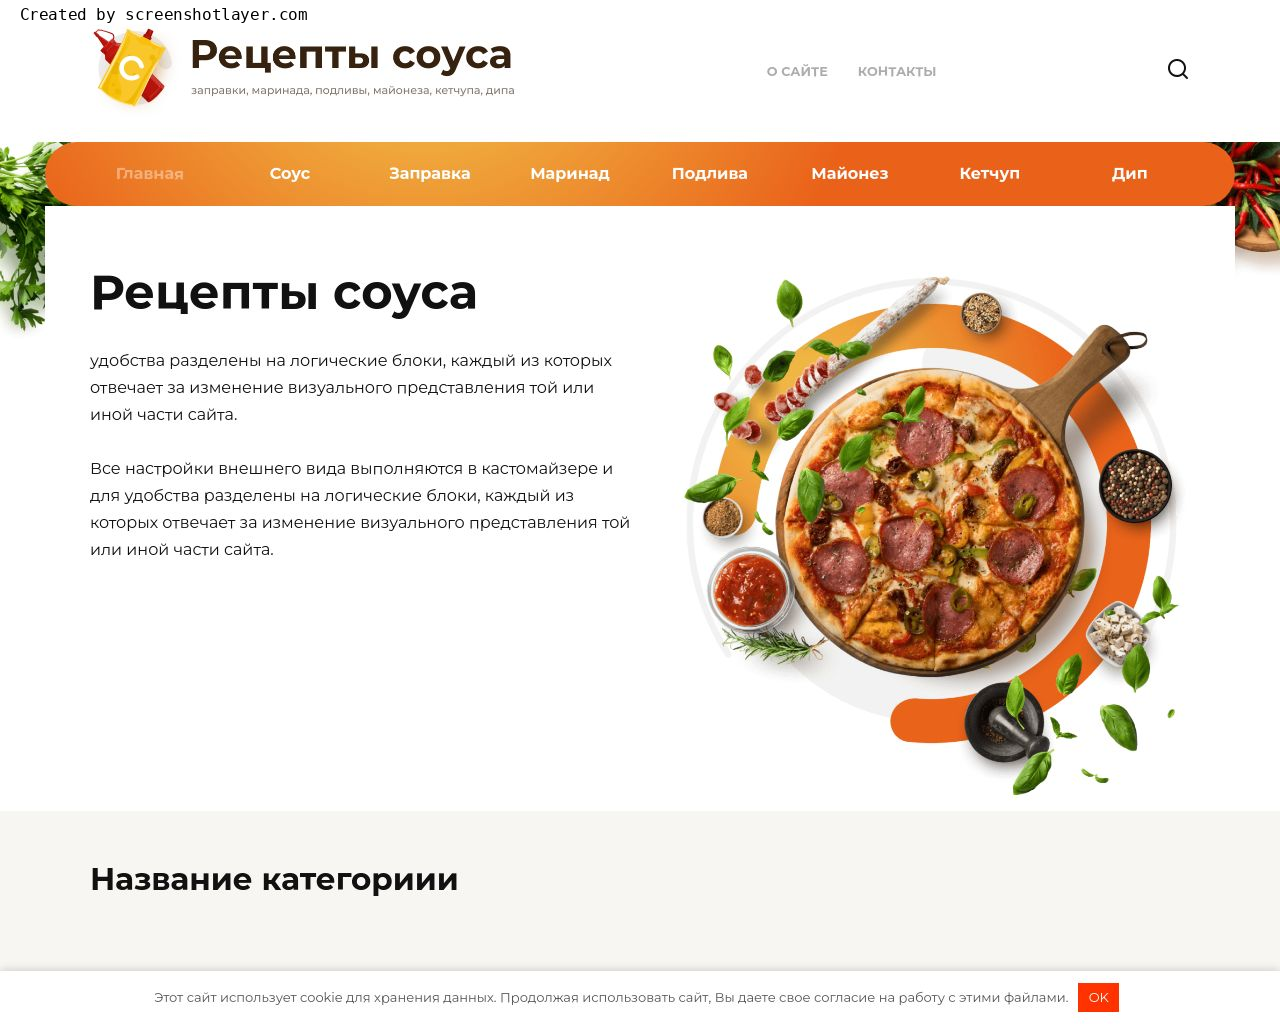 Изображение сайта sauce-recipes.ru в разрешении 1280x1024